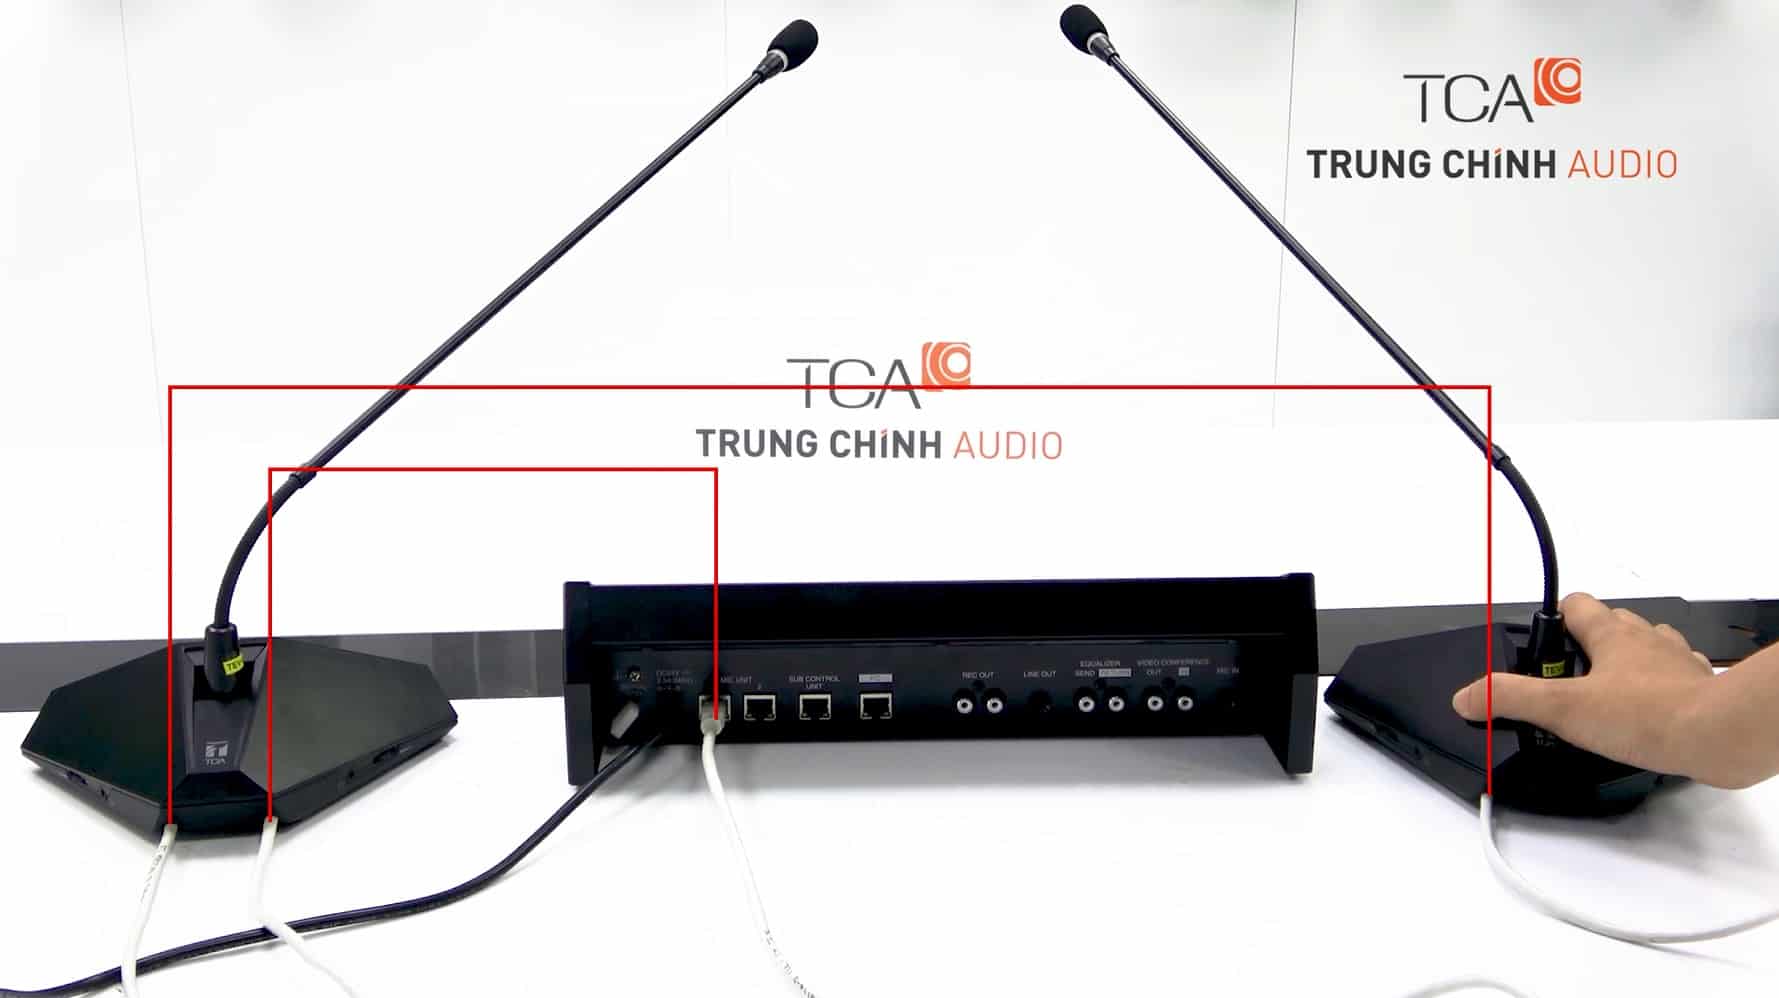 Hệ thống hội thảo TOA TS-D1000 thiết bị âm thanh phòng họp hội chẩn trực tuyến